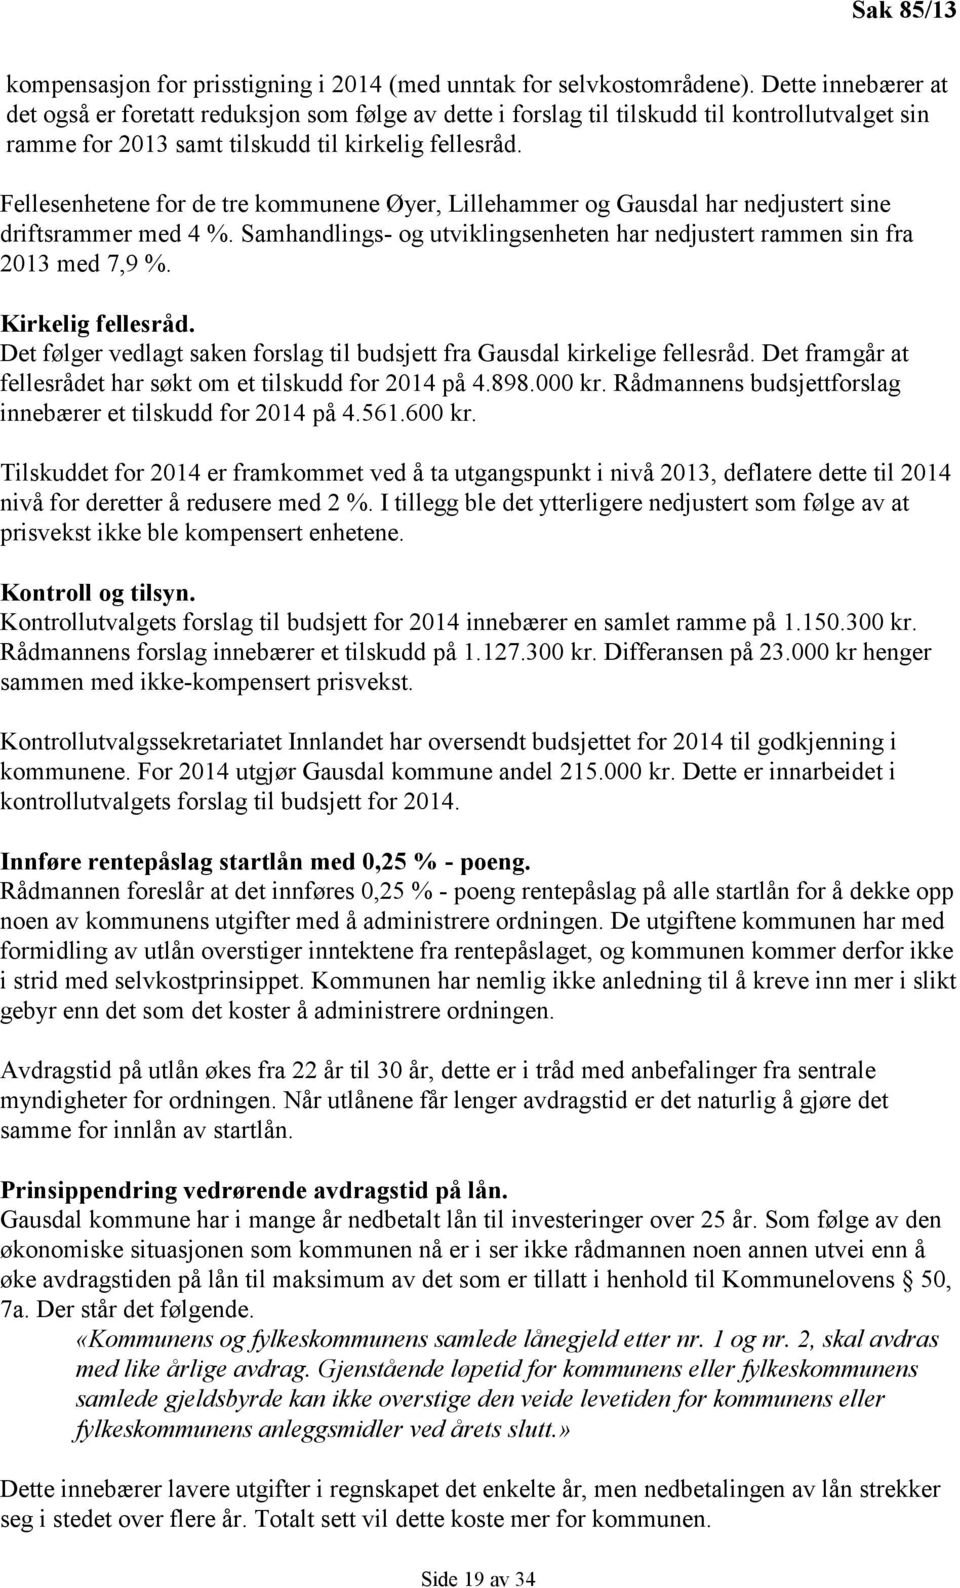 Fellesenhetene for de tre kommunene Øyer, Lillehammer og Gausdal har nedjustert sine driftsrammer med 4 %. Samhandlings- og utviklingsenheten har nedjustert rammen sin fra 2013 med 7,9 %.